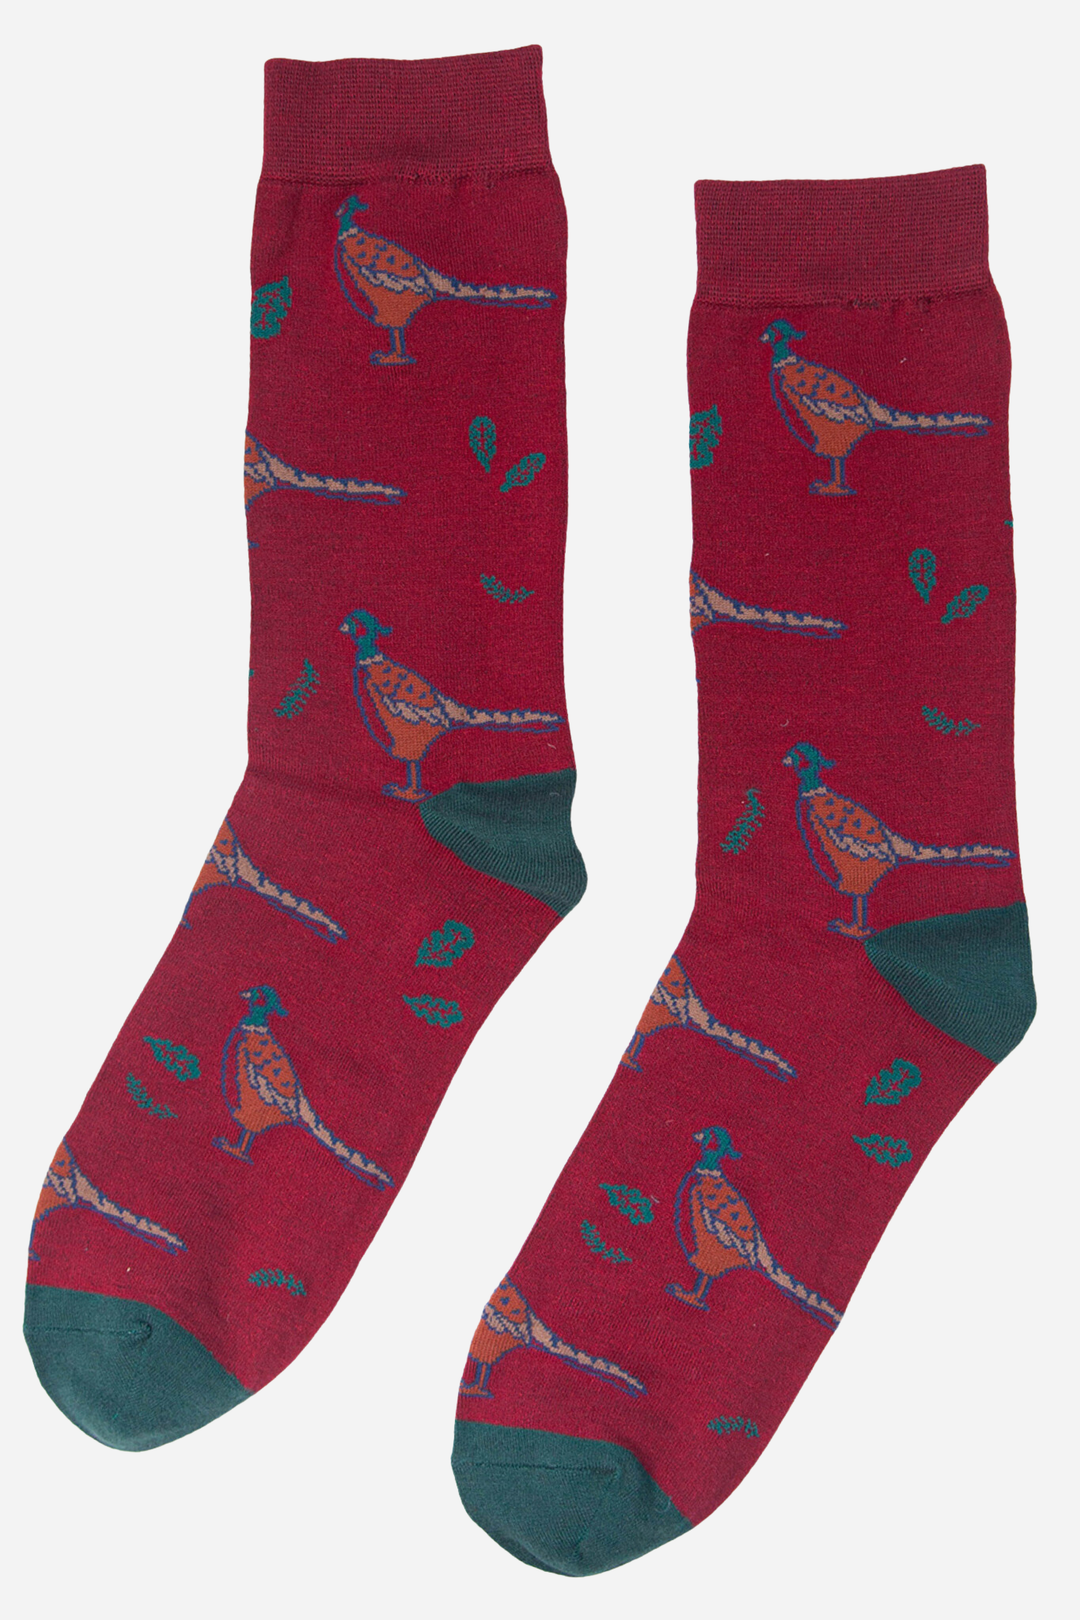 Sock Talk - Red Men's Pheasant Print Bamboo Socks